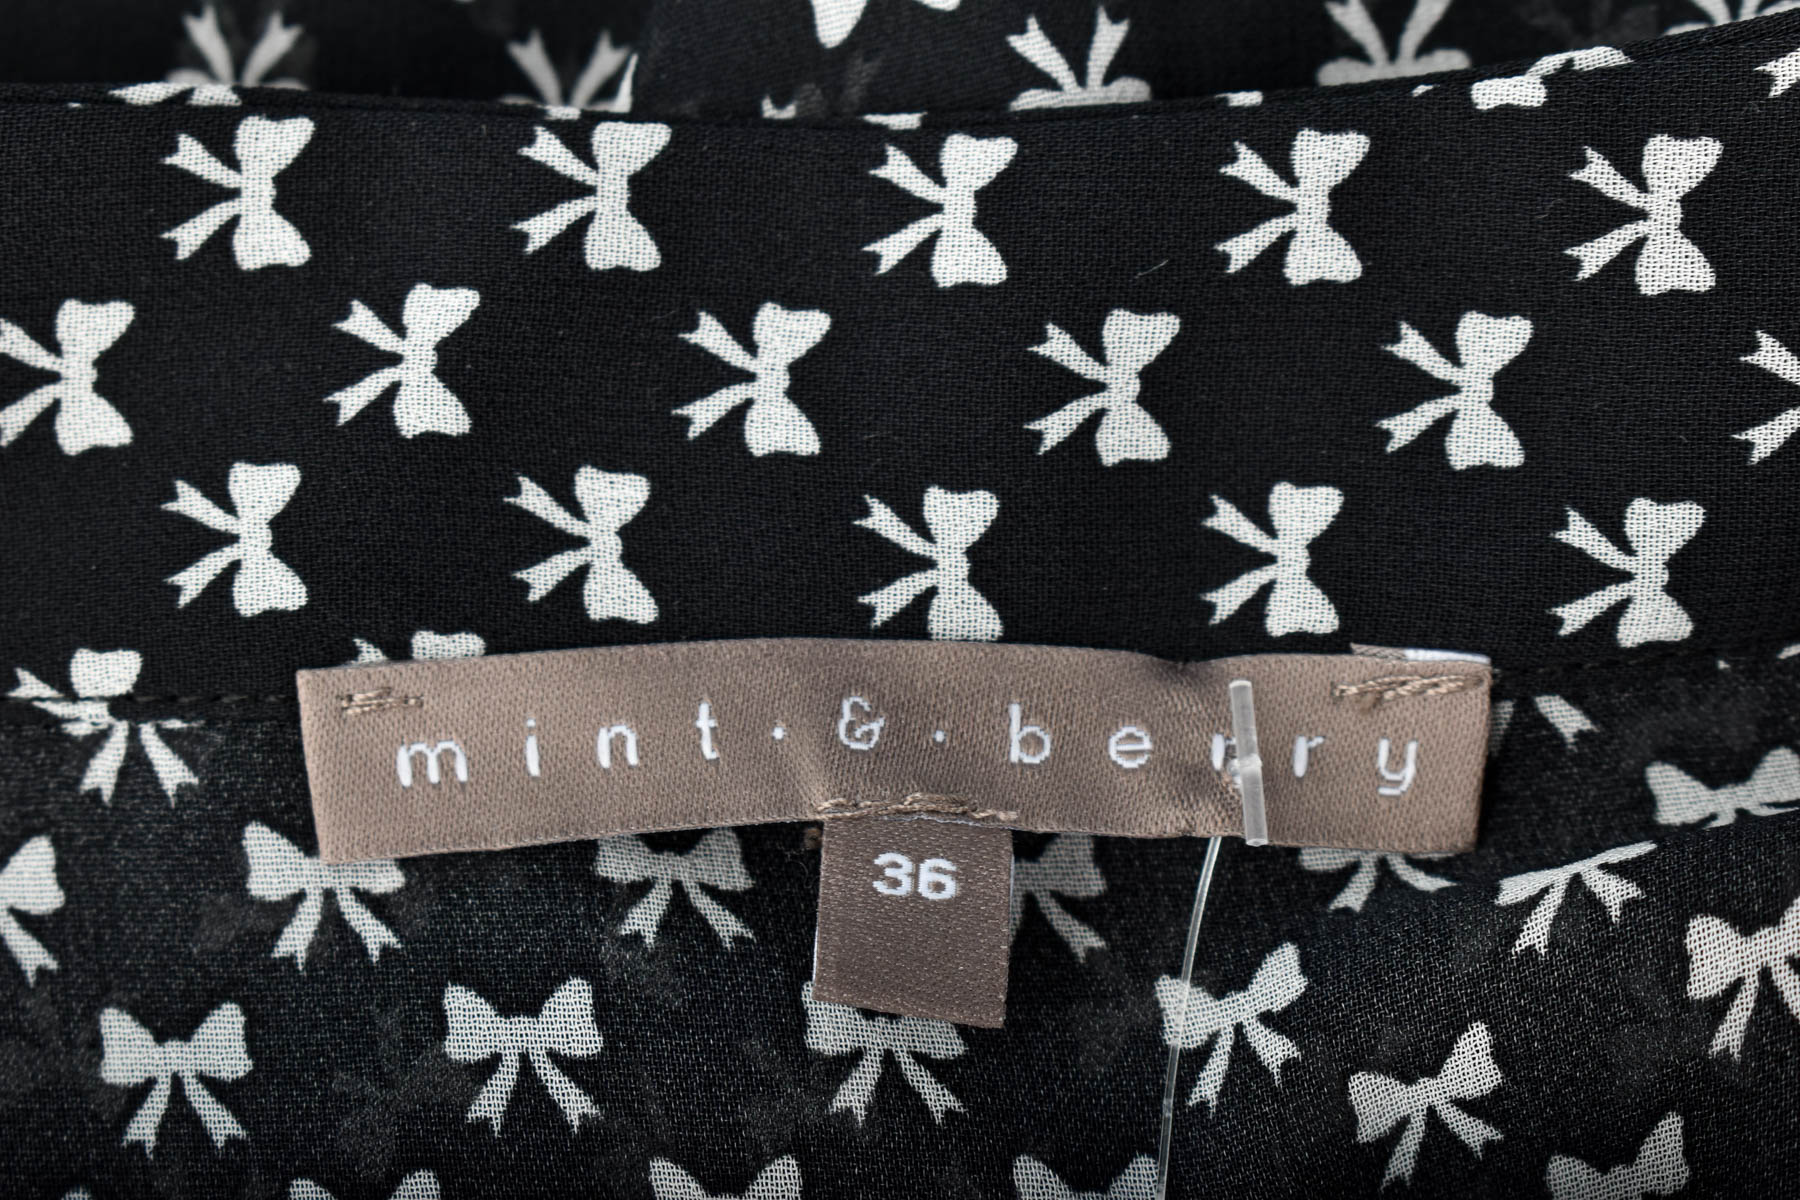 Women's shirt - Mint & Berry - 2